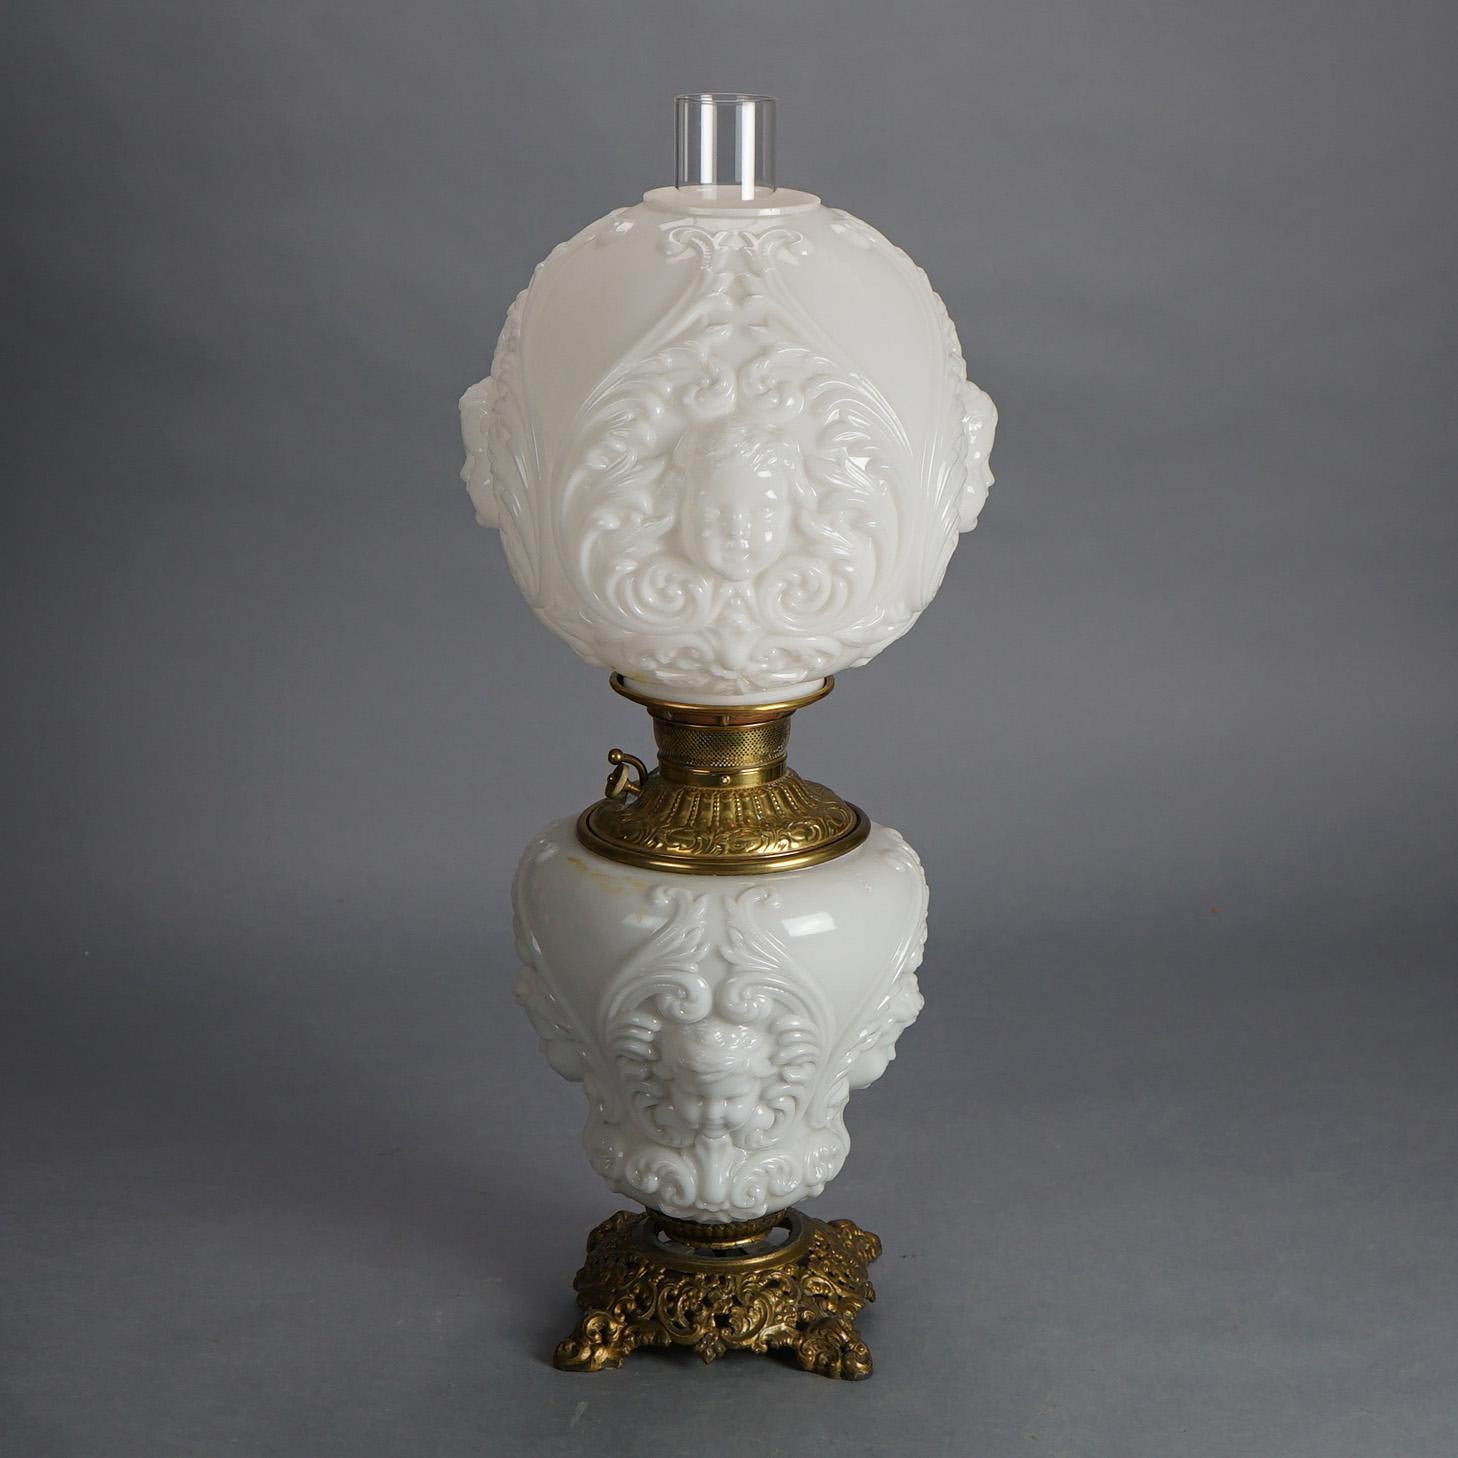 Lampe à huile ancienne Blanc de Chine Cupidon Autant en emporte le vent avec verre soufflé et monture en bronze et laiton fondu feuillagé v1900

Mesures - 25 